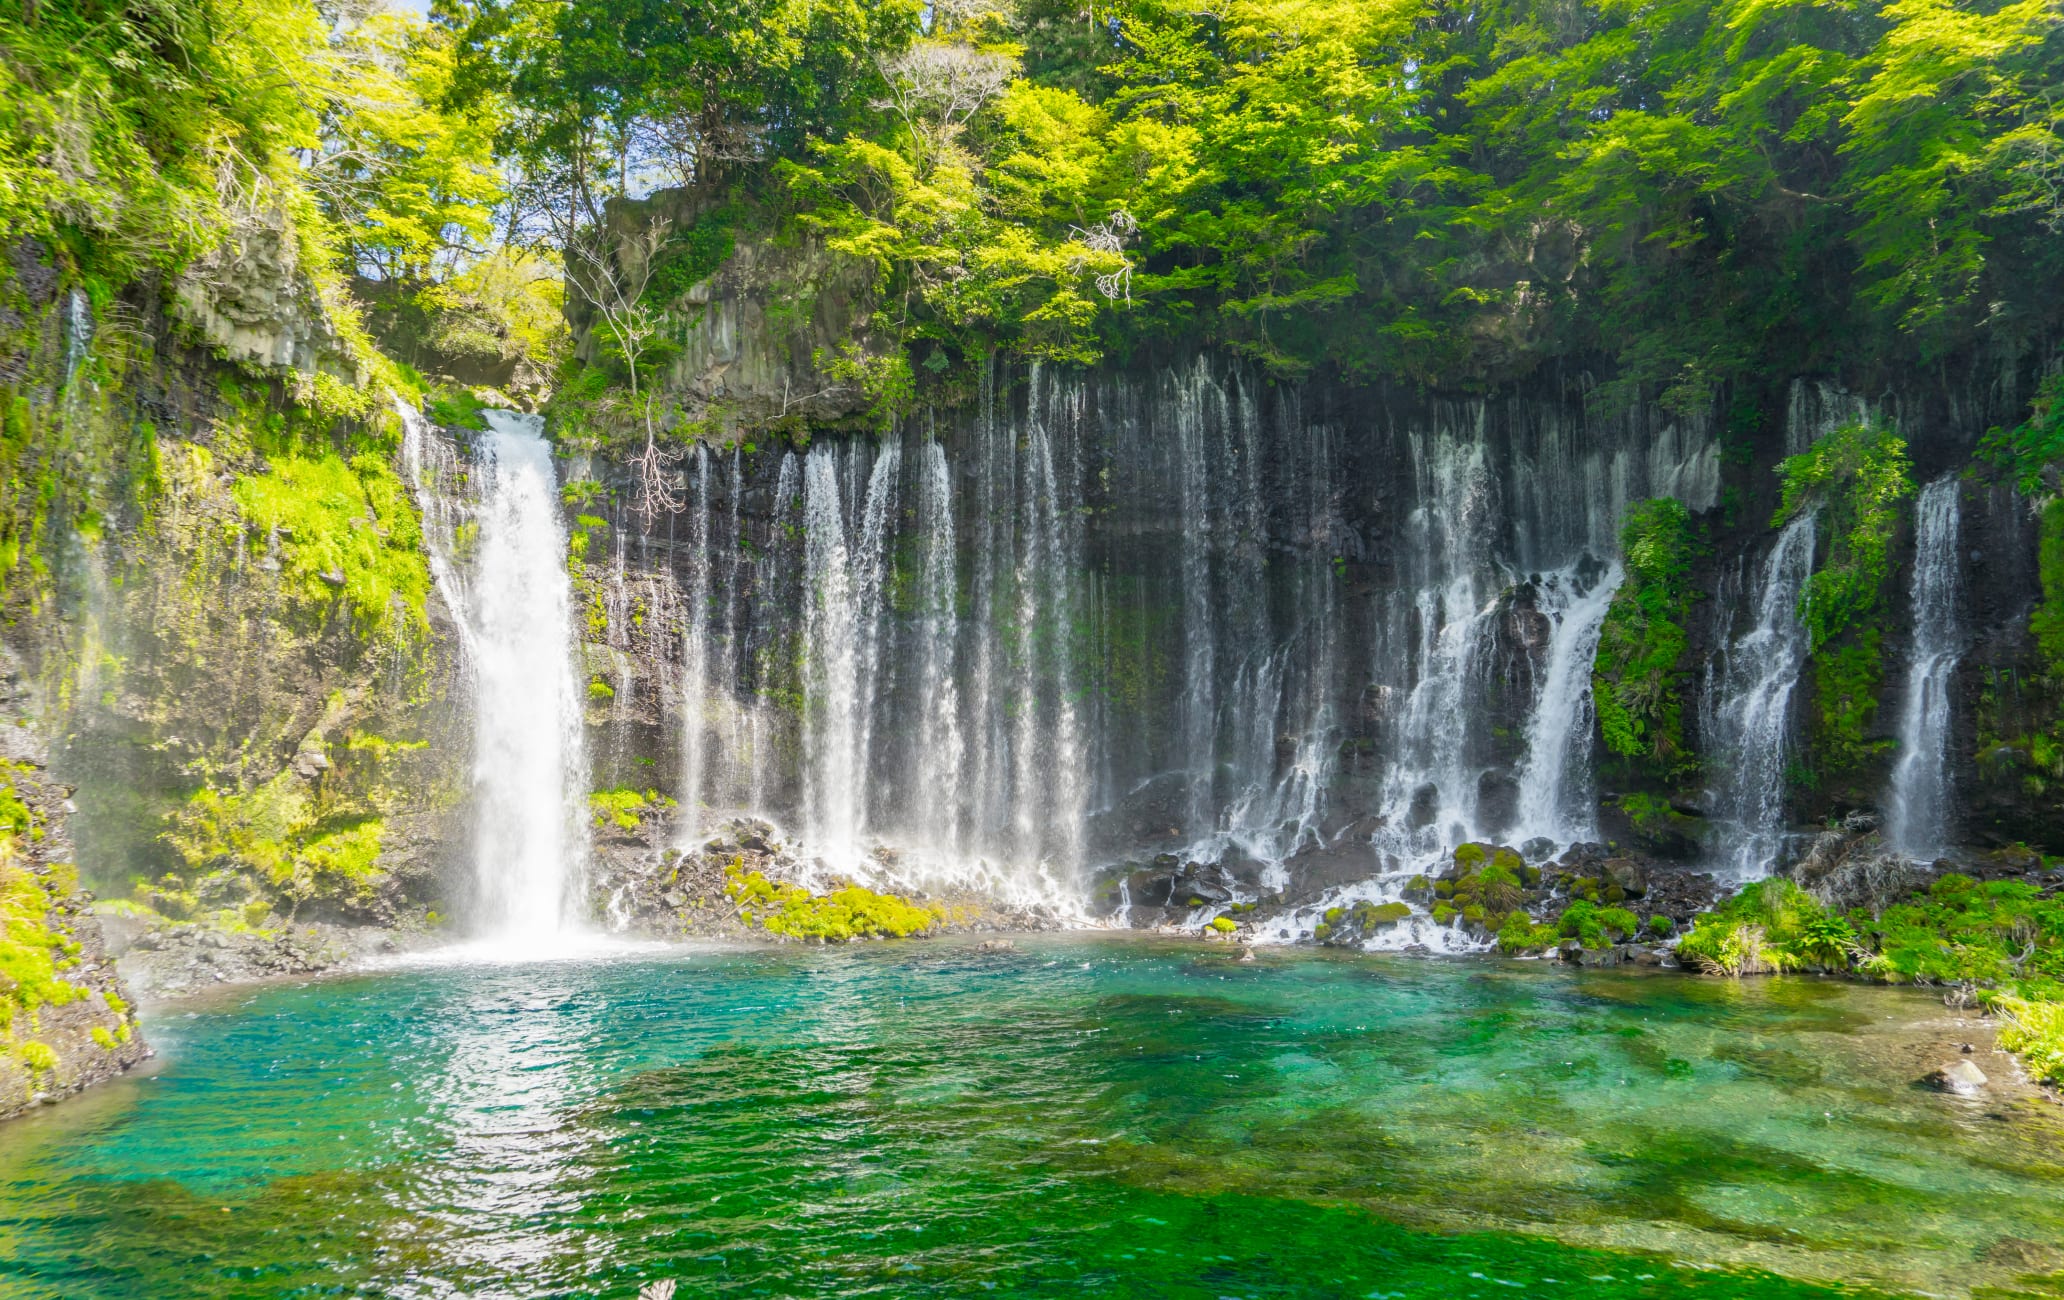 Shiraito Falls (Shizuoka)